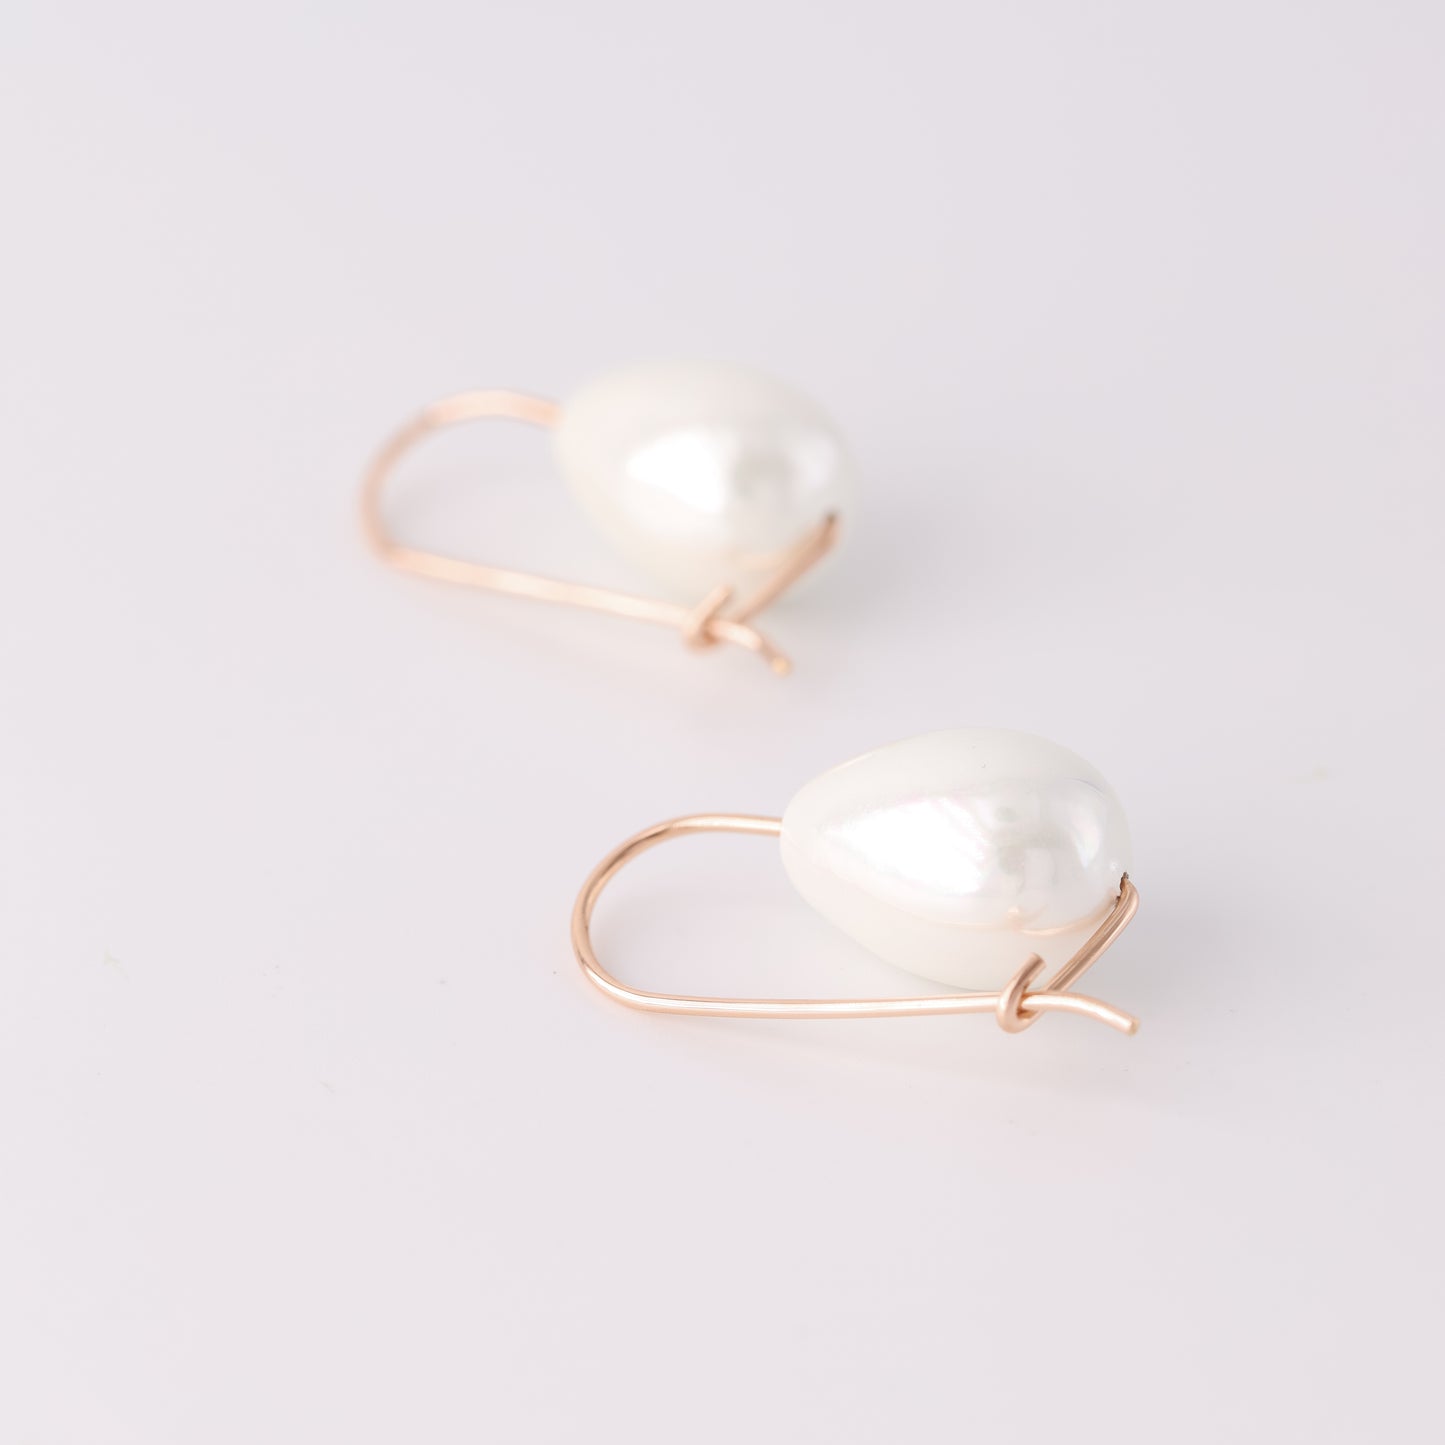 Ceramic Pearl Earrings • Drop Pearl Earrings • Gold Filled • Fashion Everyday Jewellery • Teardrop Dangle Earrings • BYSDMJEWELS